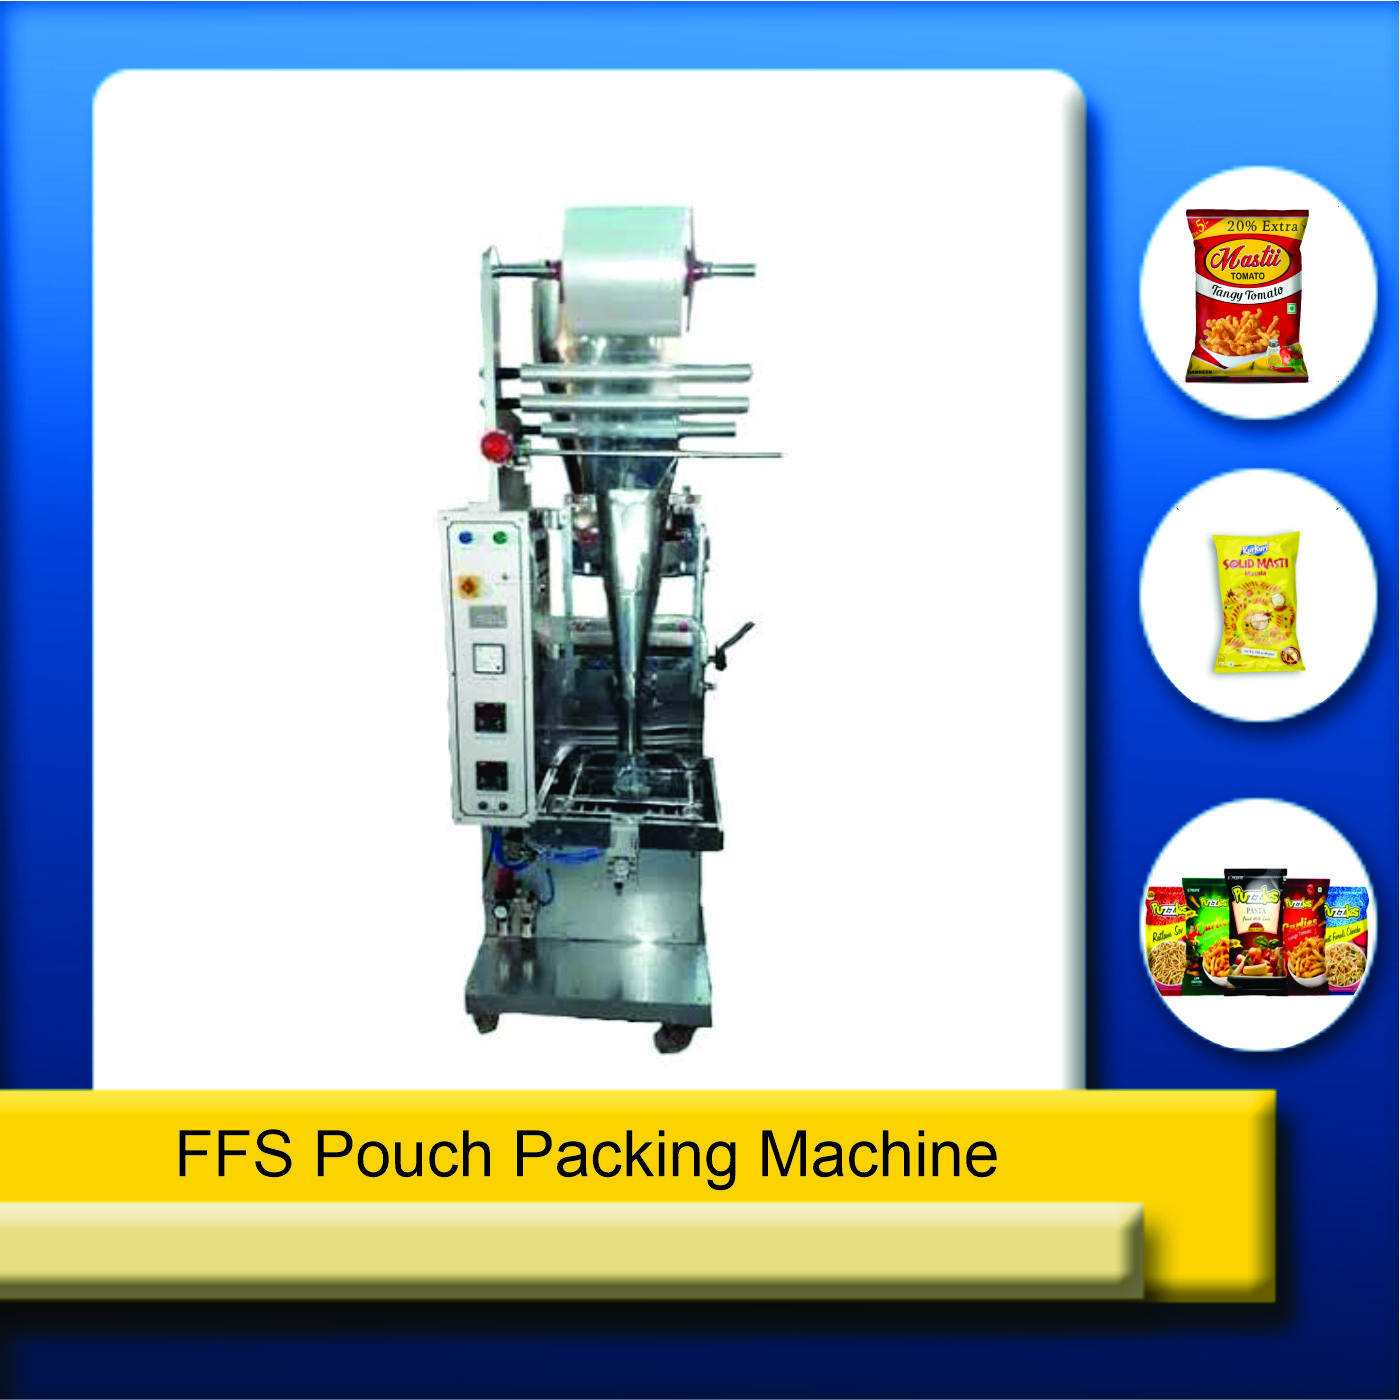 ffs pouch packaging machine